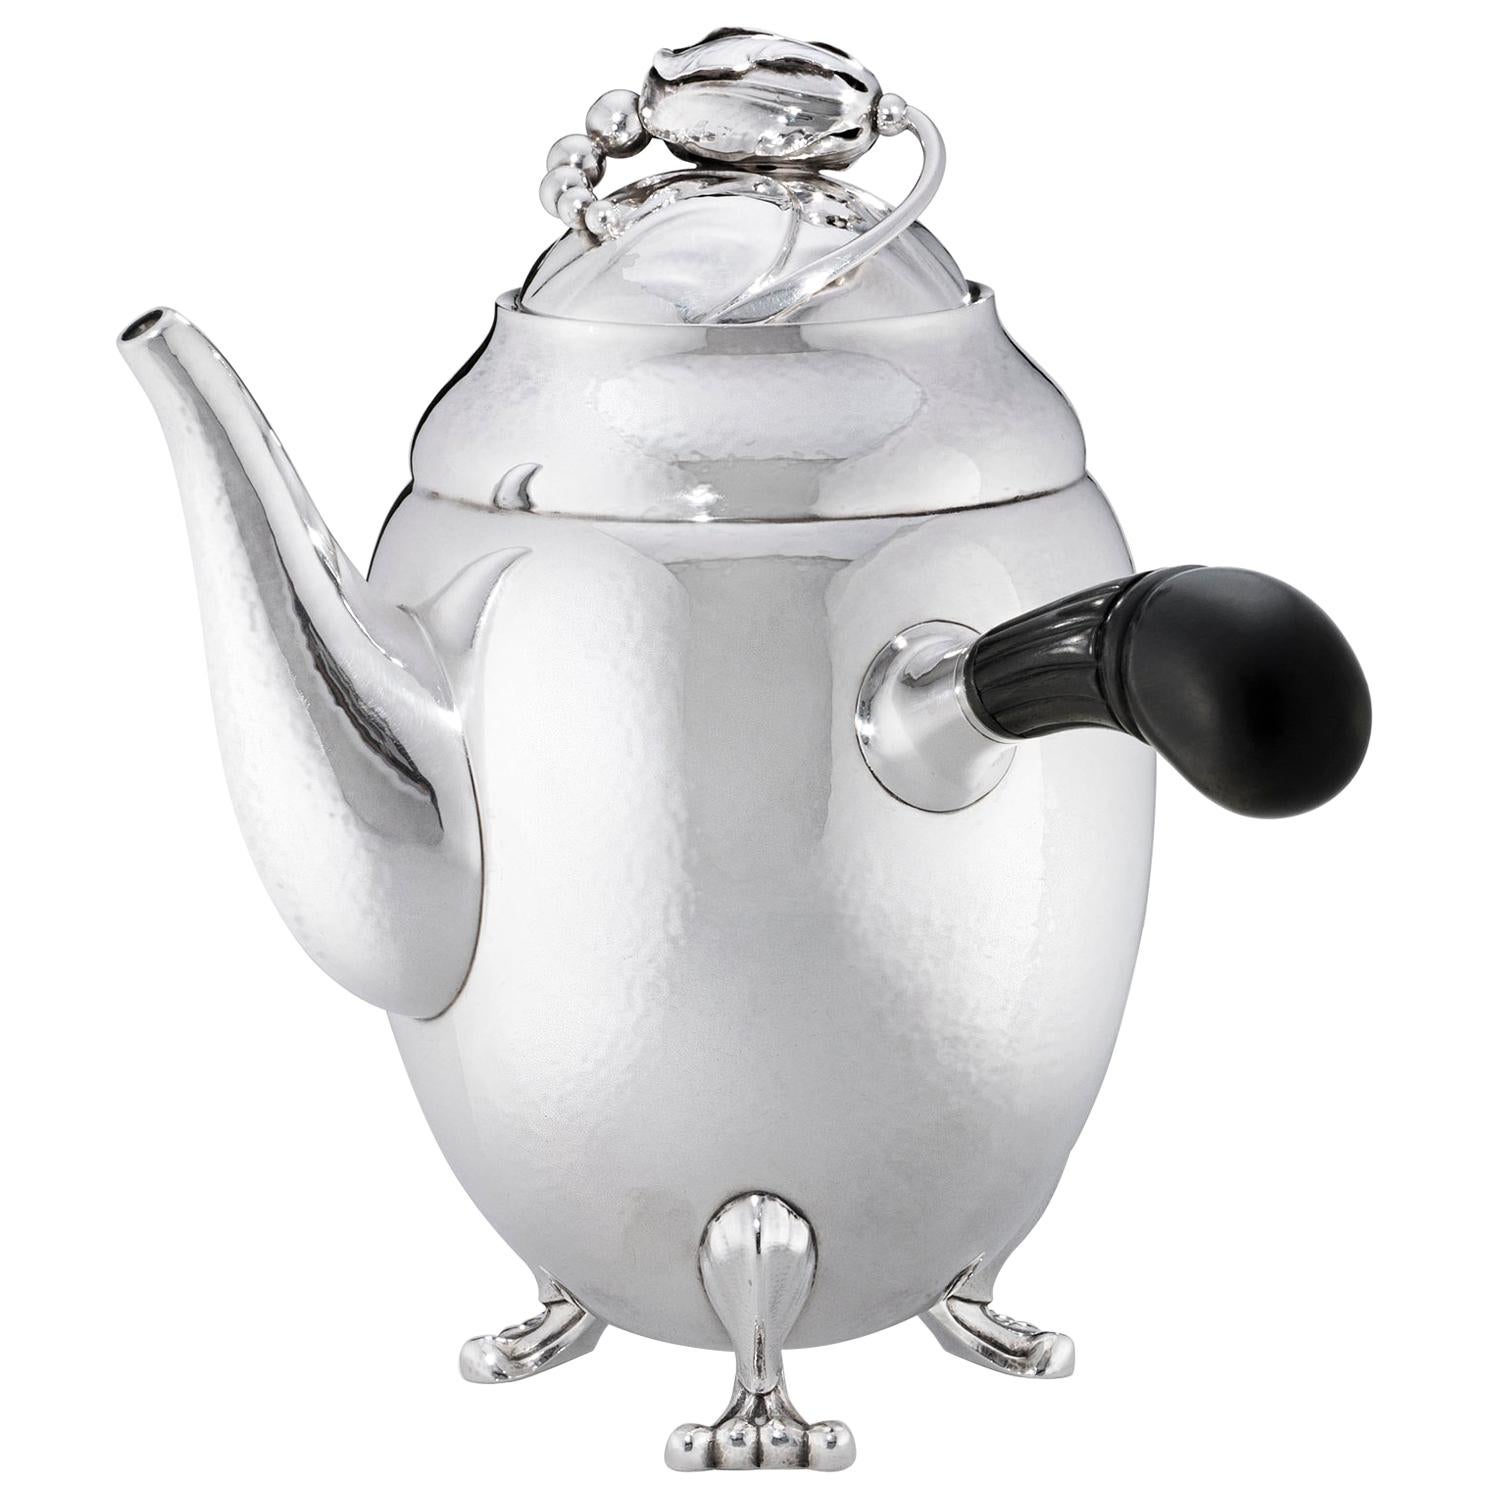 Georg Jensen 1017A Handcrafted Sterling Silver Coffee Pot in Ebony